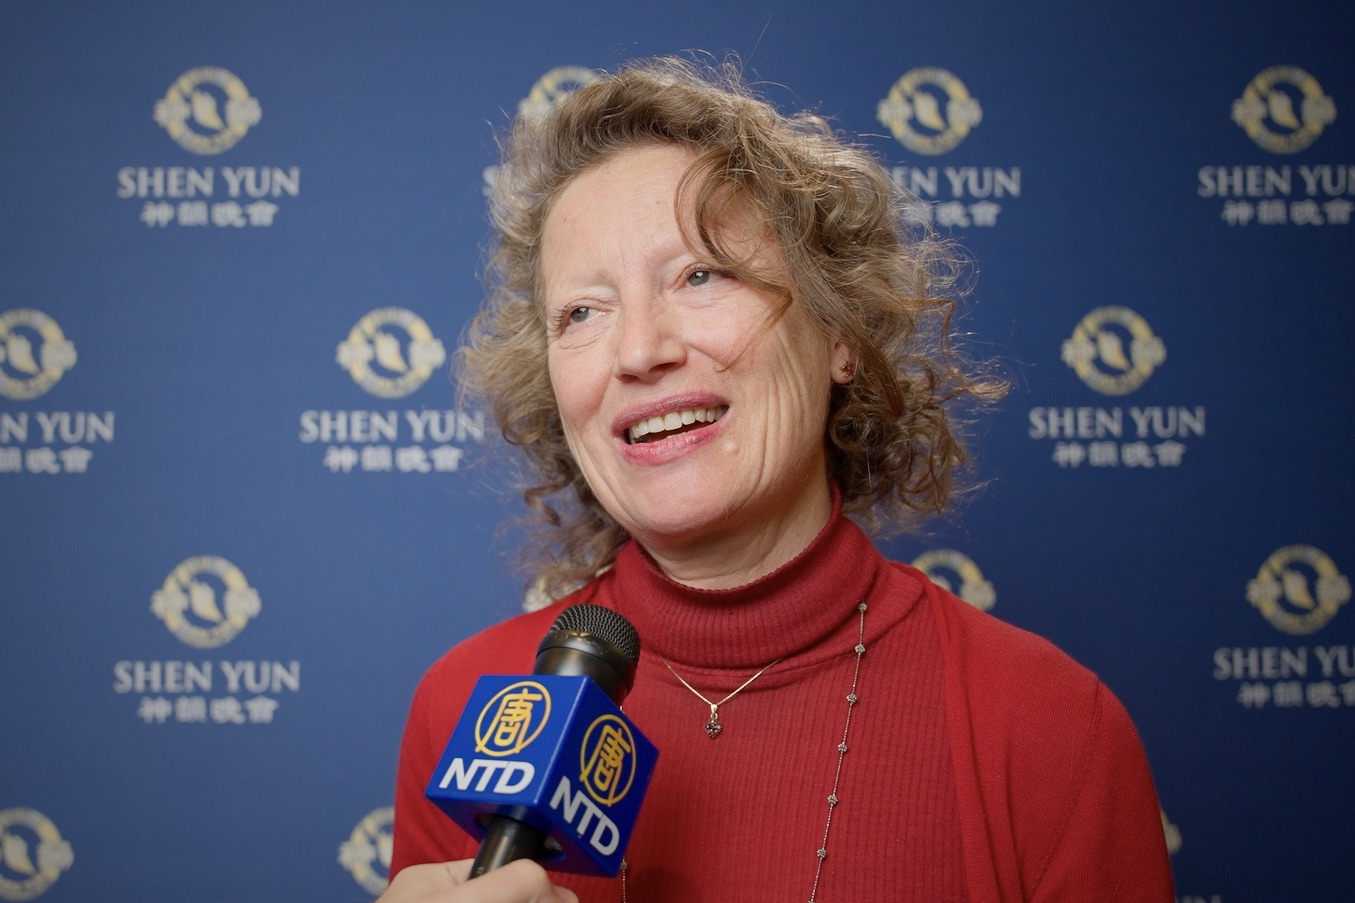 Bà Stefania Maggini thưởng thức chương trình Nghệ thuật Biểu diễn Shen Yun tại Nhà hát Maggio Musicale Fiorentino, ở thành phố Florence, nước Ý, hôm 27/12/2023. (Ảnh: Đài truyền hình NTD)